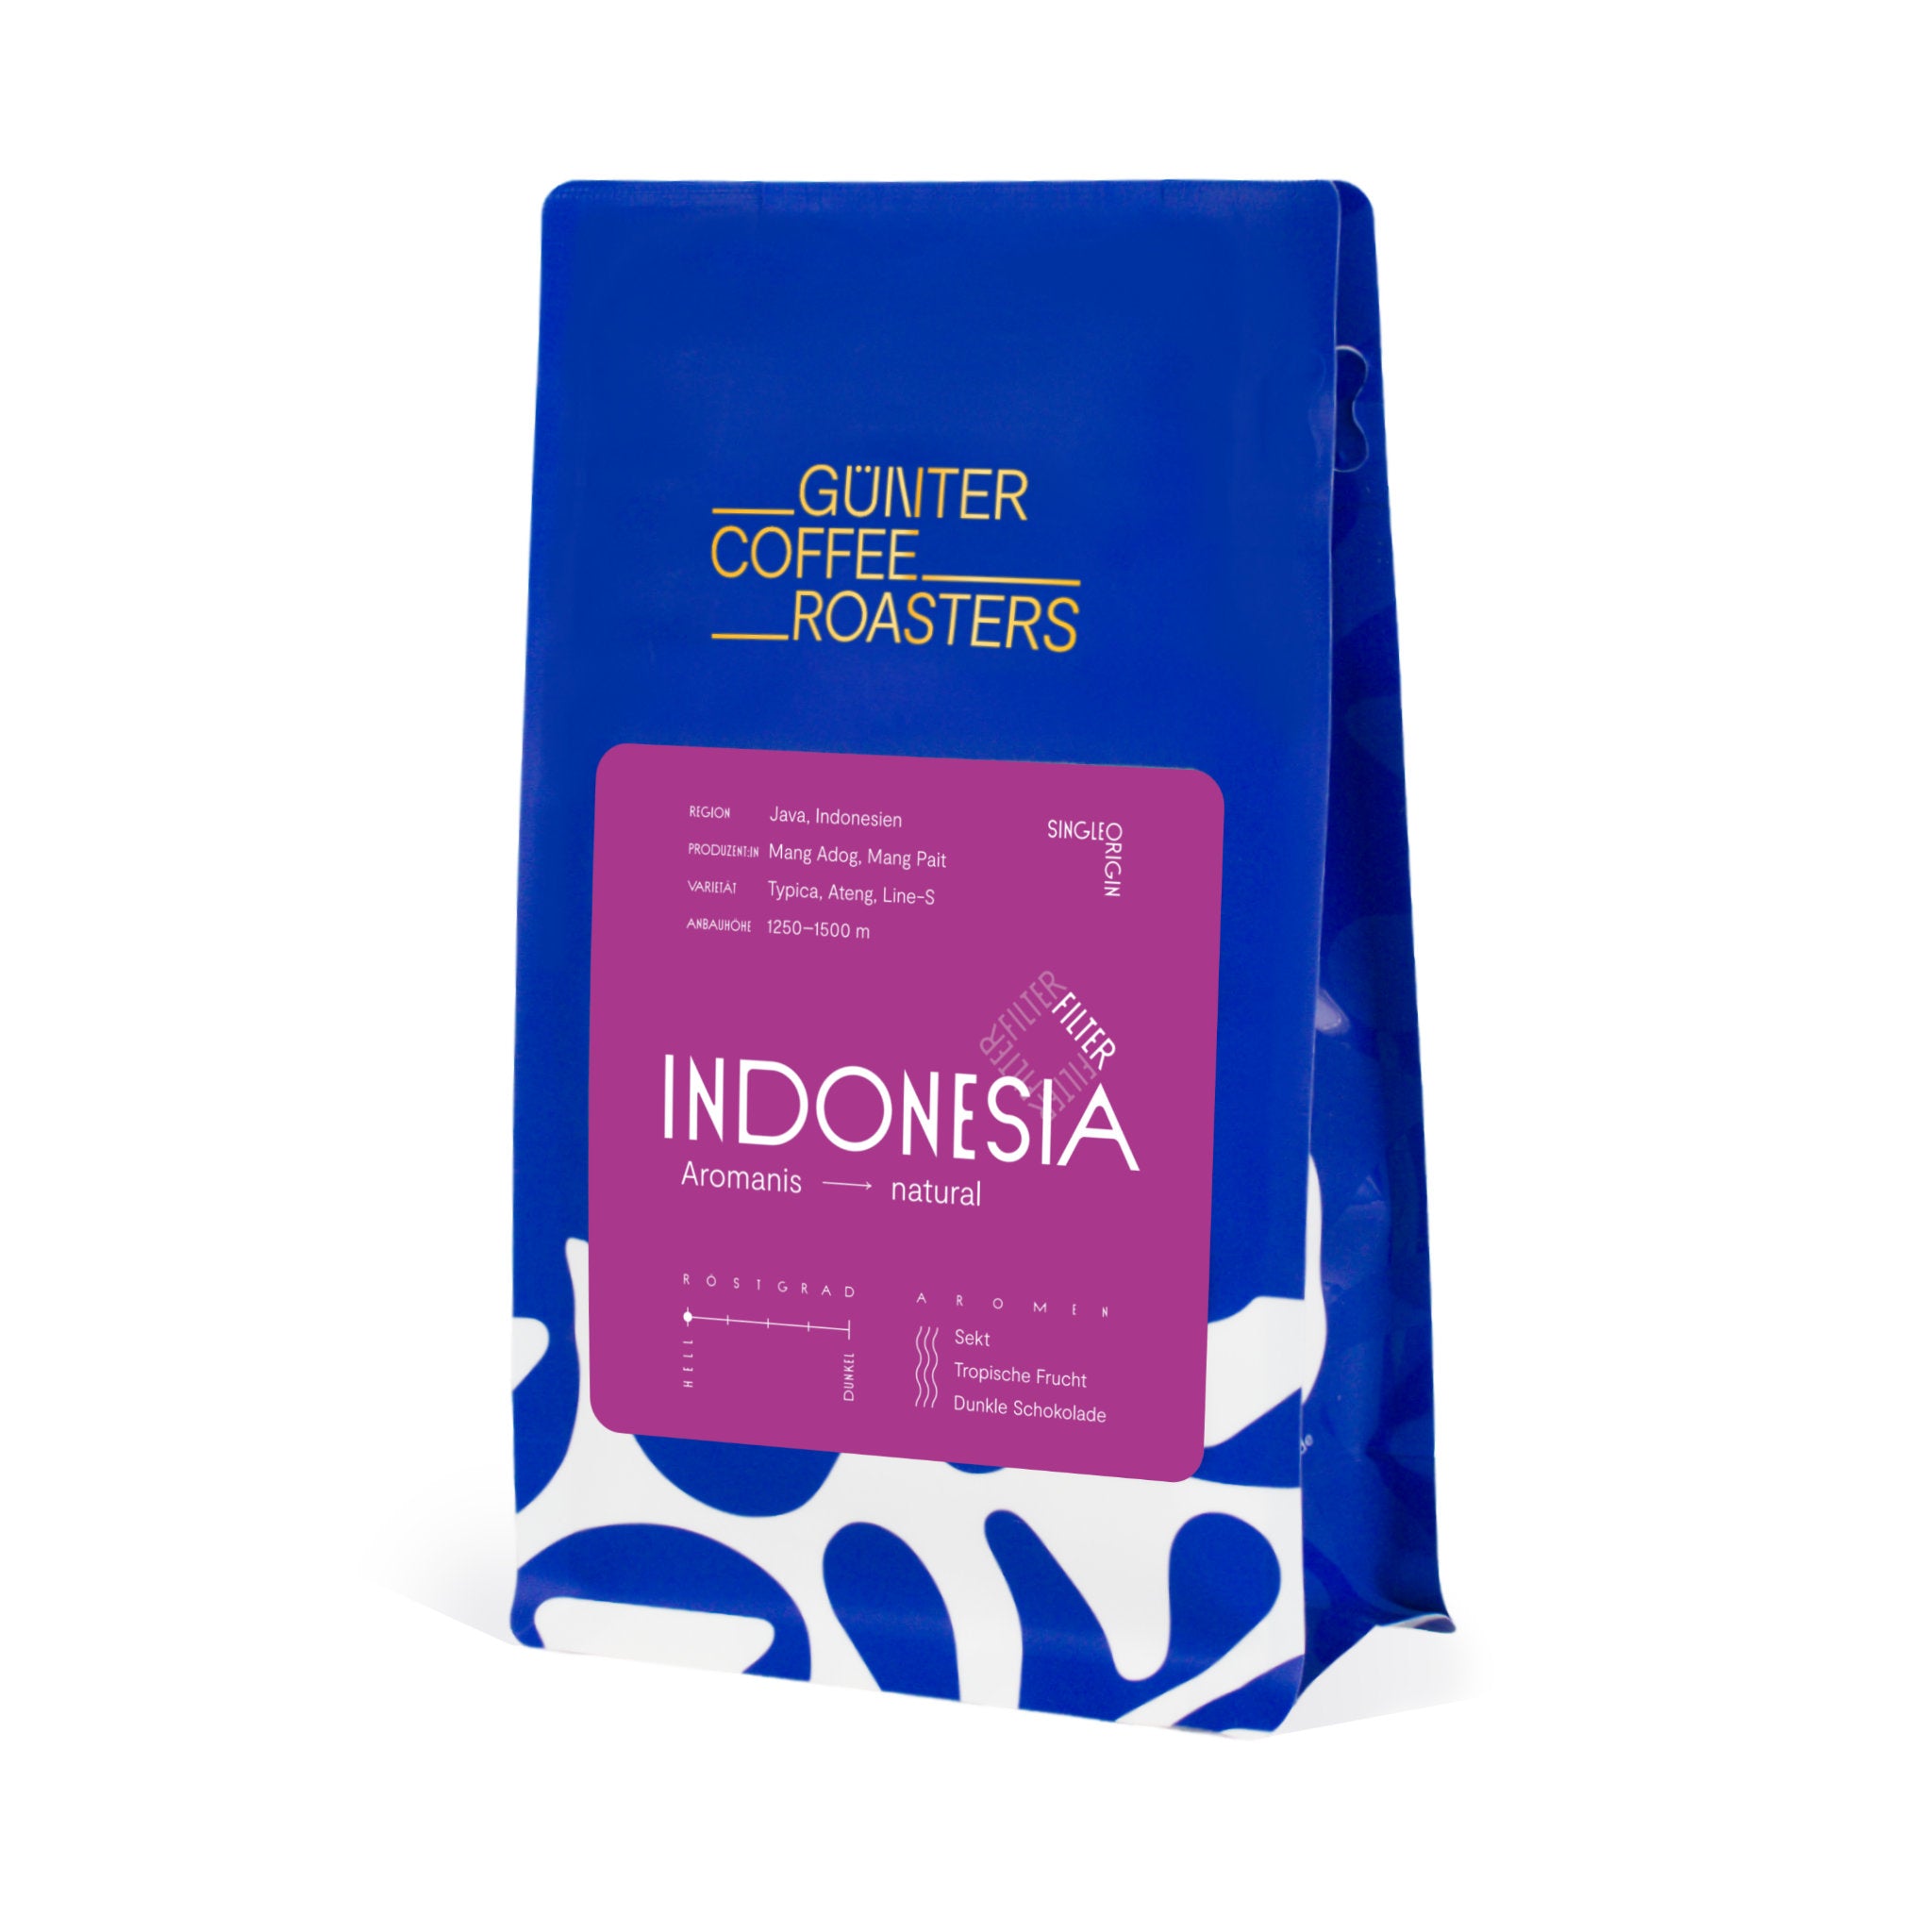 Produktverpackung Indonesia Aromanis, natürlich aufbereitete, hell geröstete Kaffeebohnen für Filterkaffee. Schmeckt nach Sekt, tropischer Frucht und dunkler Schokolade. Single-origin-Kaffee aus Indonesien.